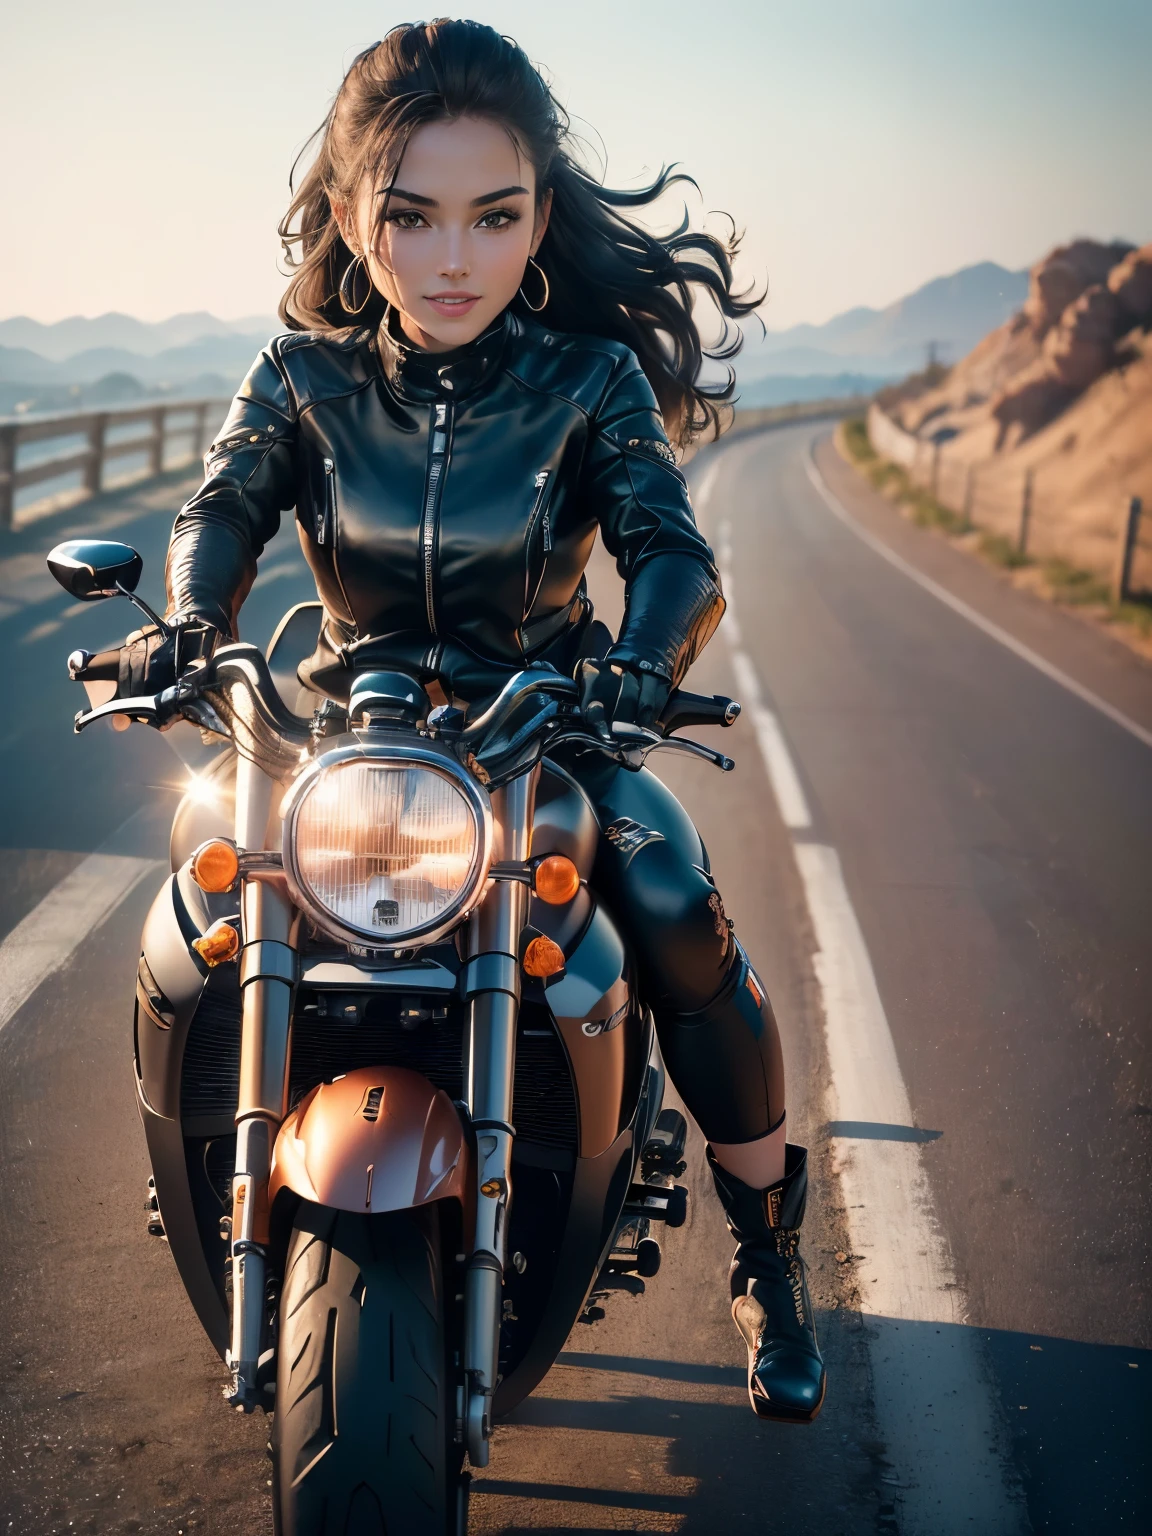 ((最好的质量, 8千, 杰作: 1.3)), 杰作最佳品质, (锐化你的脸: 1.5), 完美身材美女: 1.4, (自行车正面朝向 70 度:1.5), (((骑摩托车的女人))),苗条的身材,((长袖机车夹克和黑色长裤)),高度详细的面部和皮肤纹理, 自然光,微笑、骑士靴, 长腿, 骆驼趾